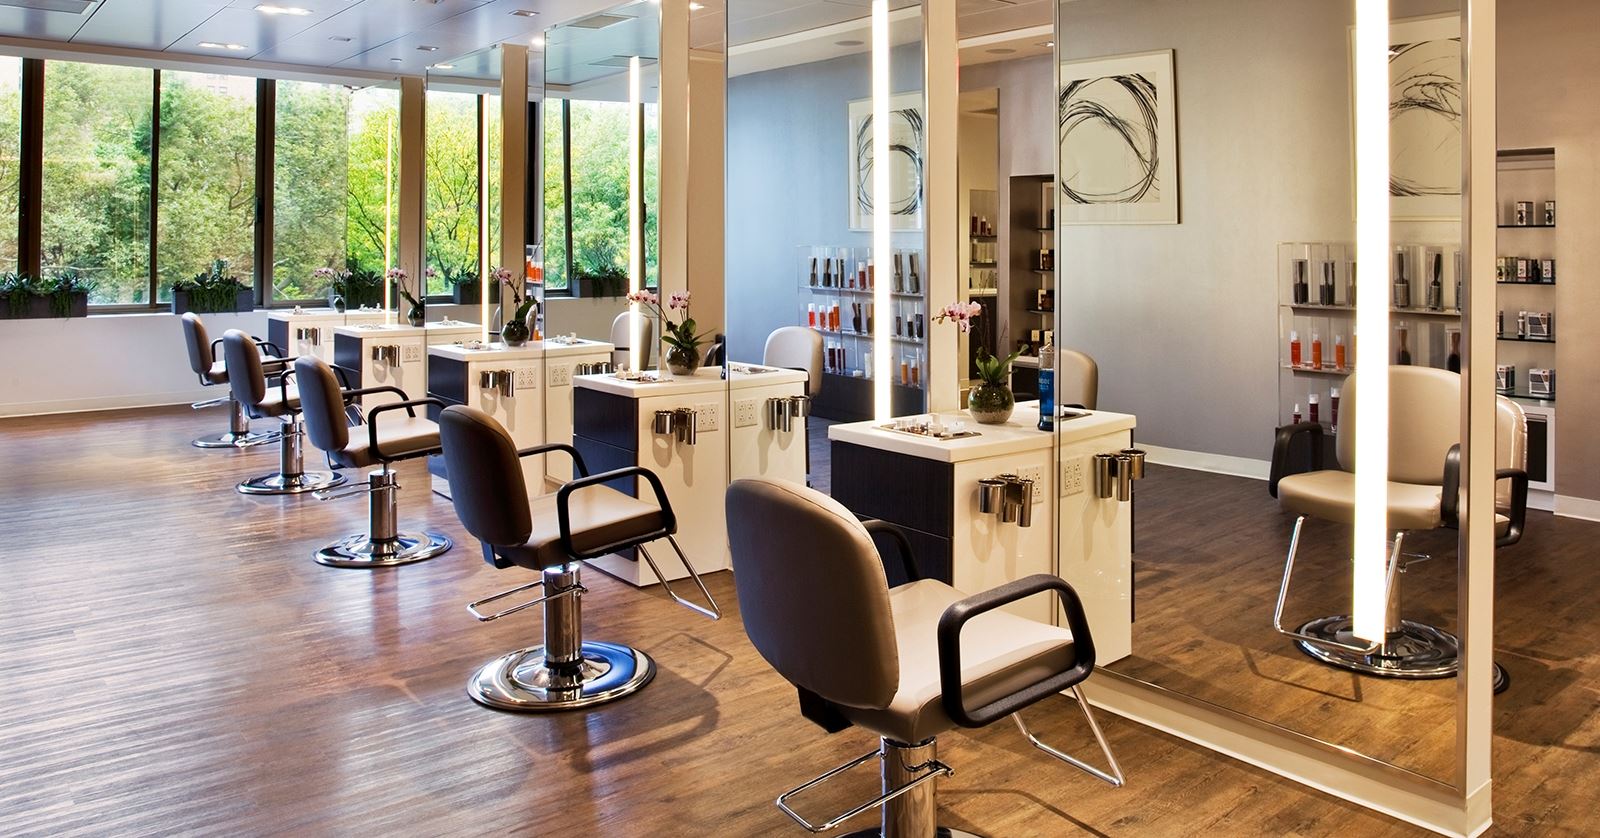 Marina Bella Natural Hair Salon – Call us directly at 518-378-6156